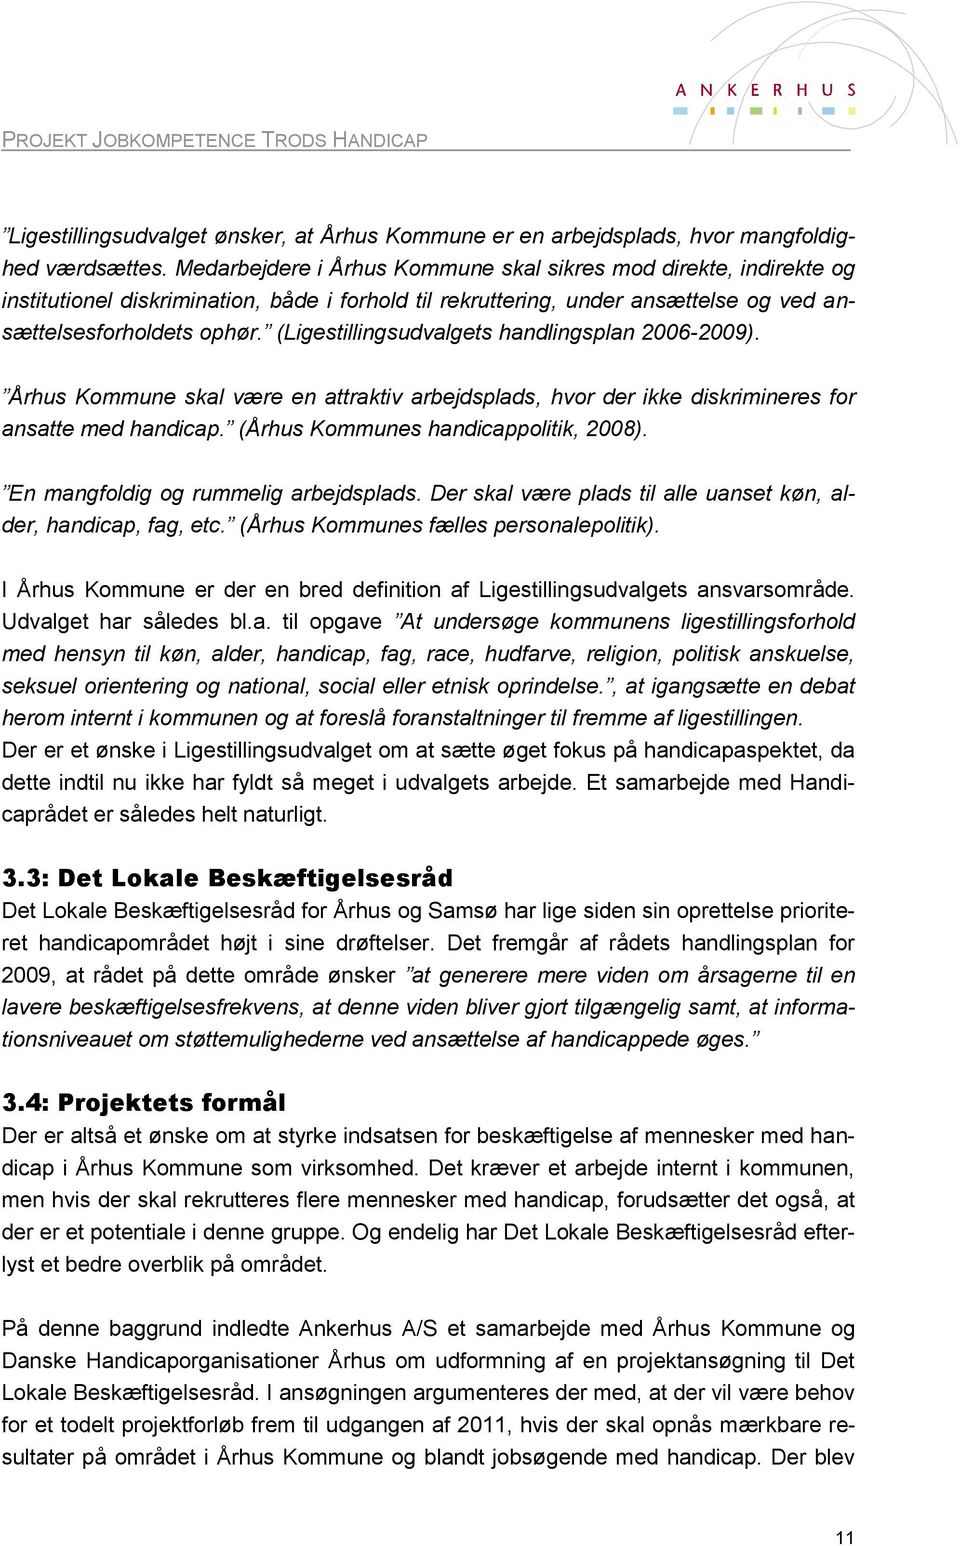 (Ligestillingsudvalgets handlingsplan 2006-2009). Århus Kommune skal være en attraktiv arbejdsplads, hvor der ikke diskrimineres for ansatte med handicap. (Århus Kommunes handicappolitik, 2008).